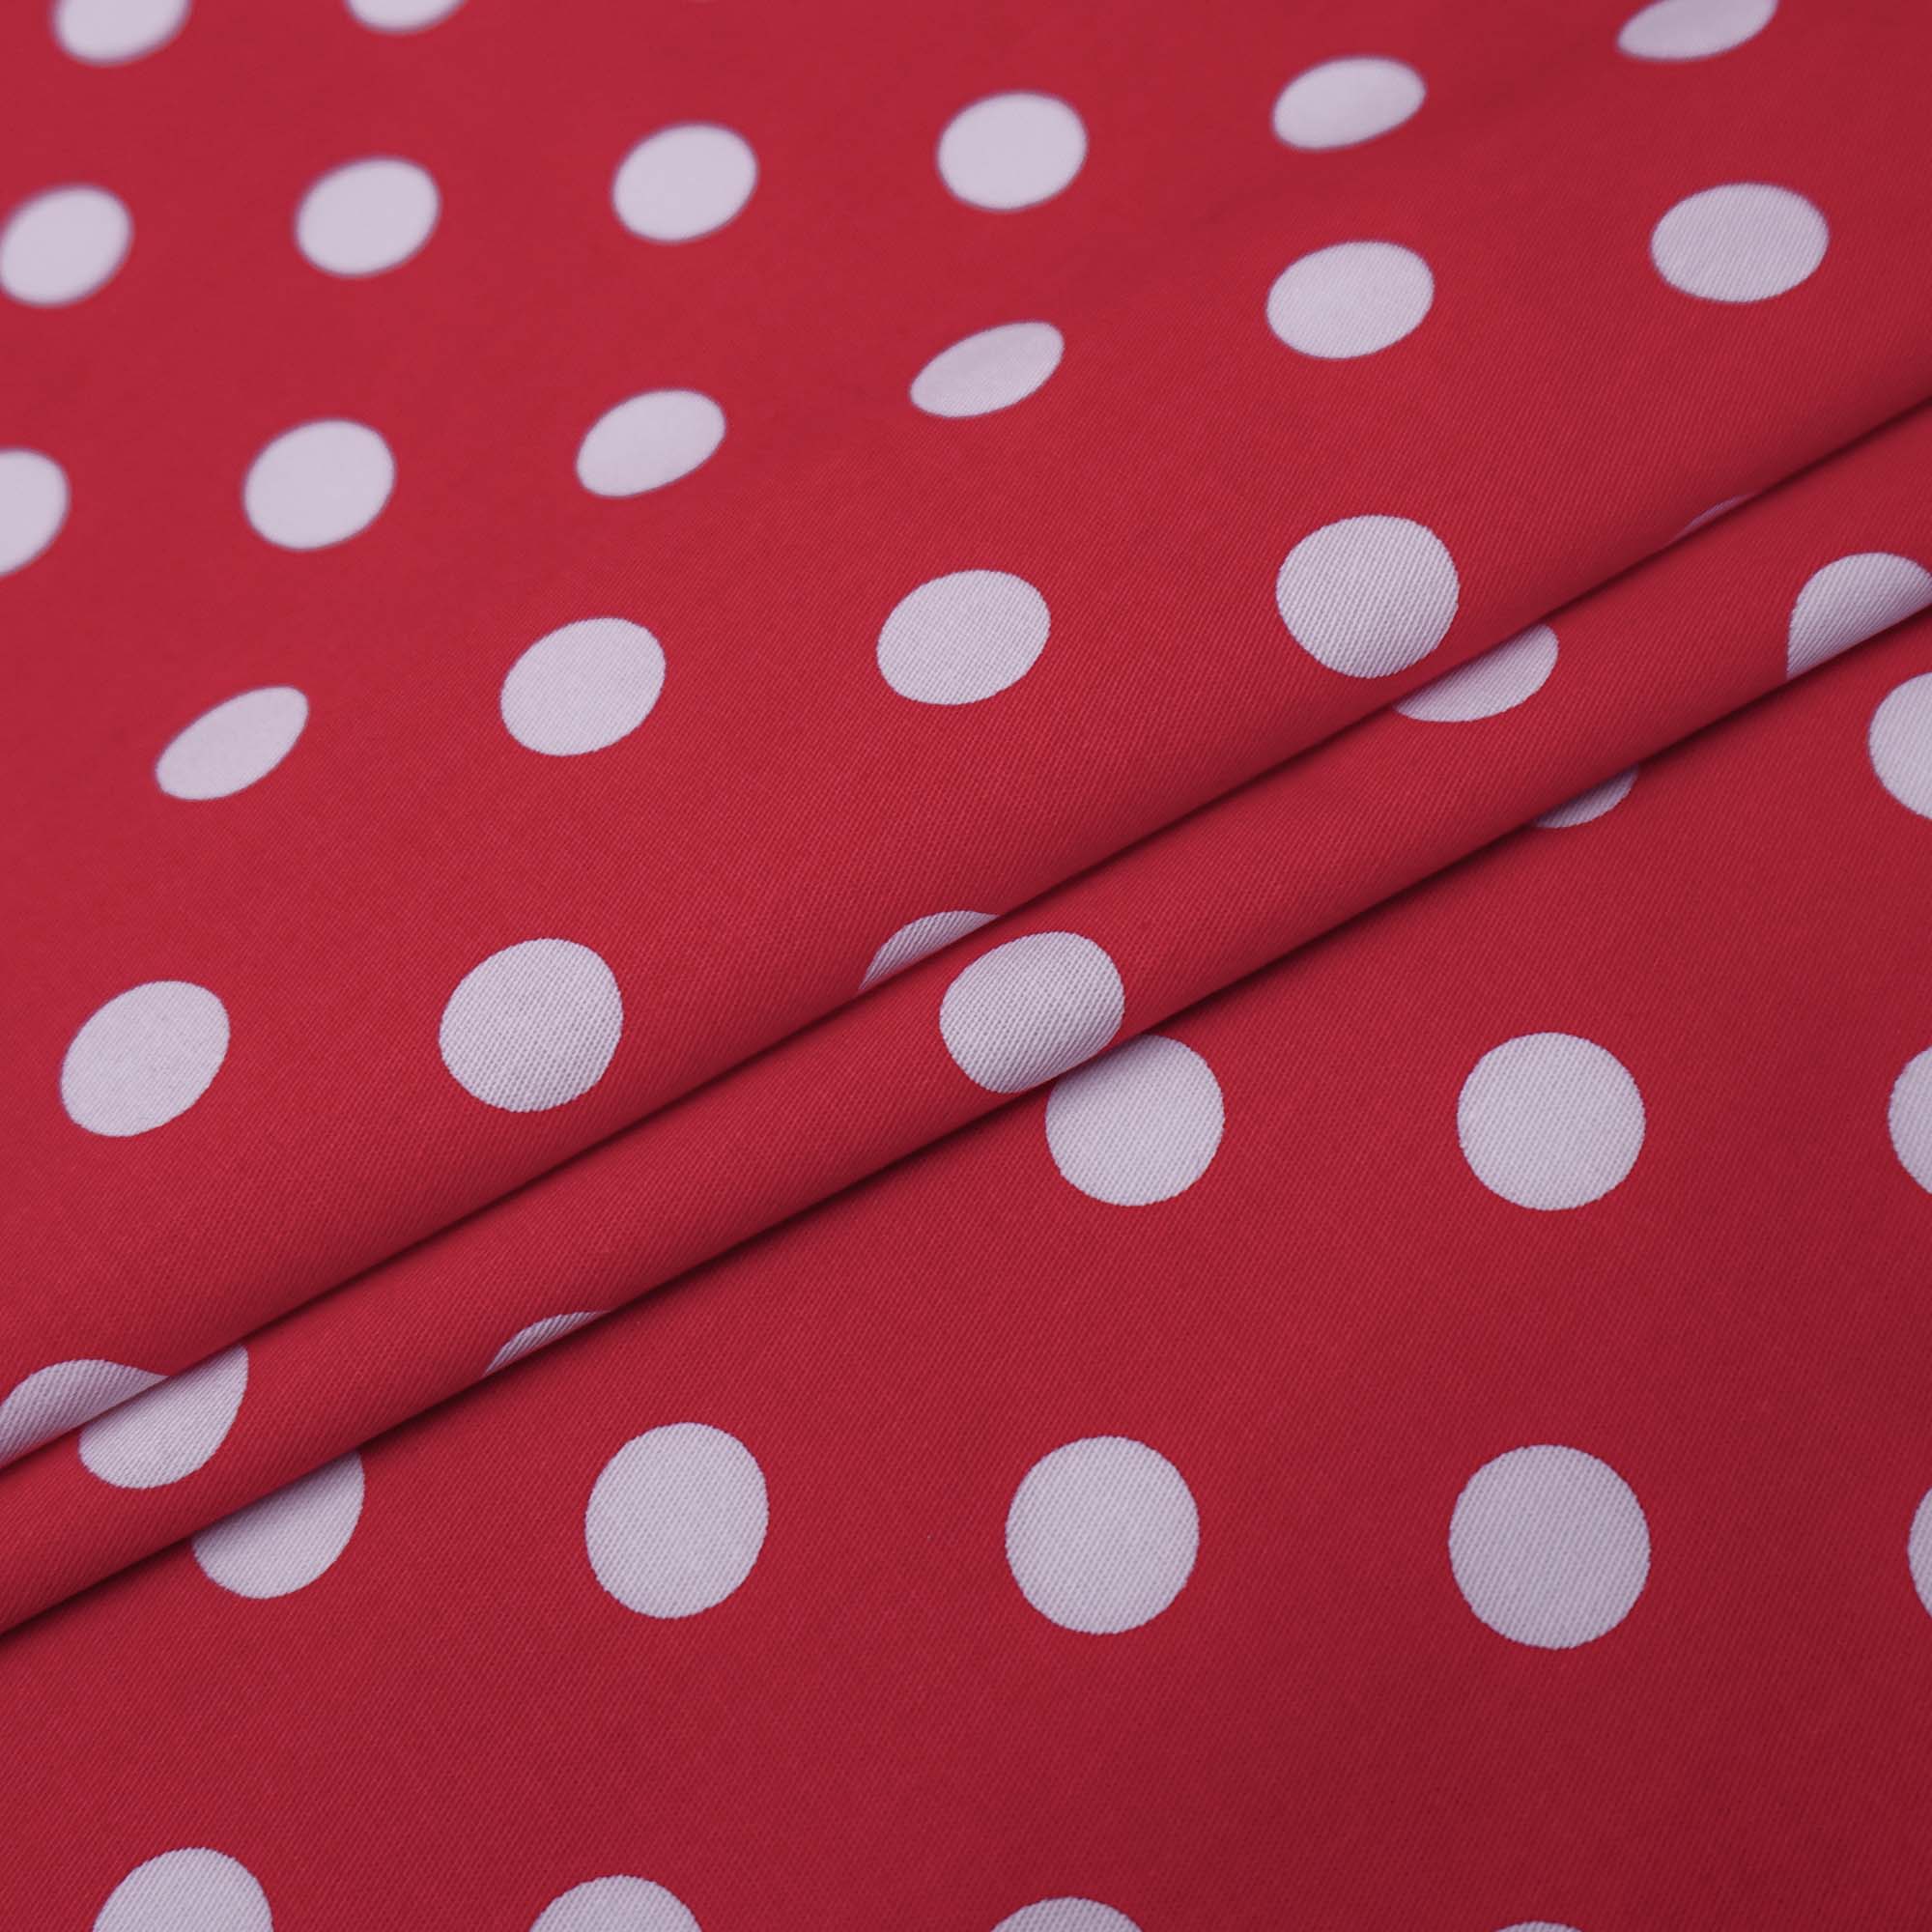 Tecido tricoline com elastano vermelho poá branco (tecido italiano legítimo)